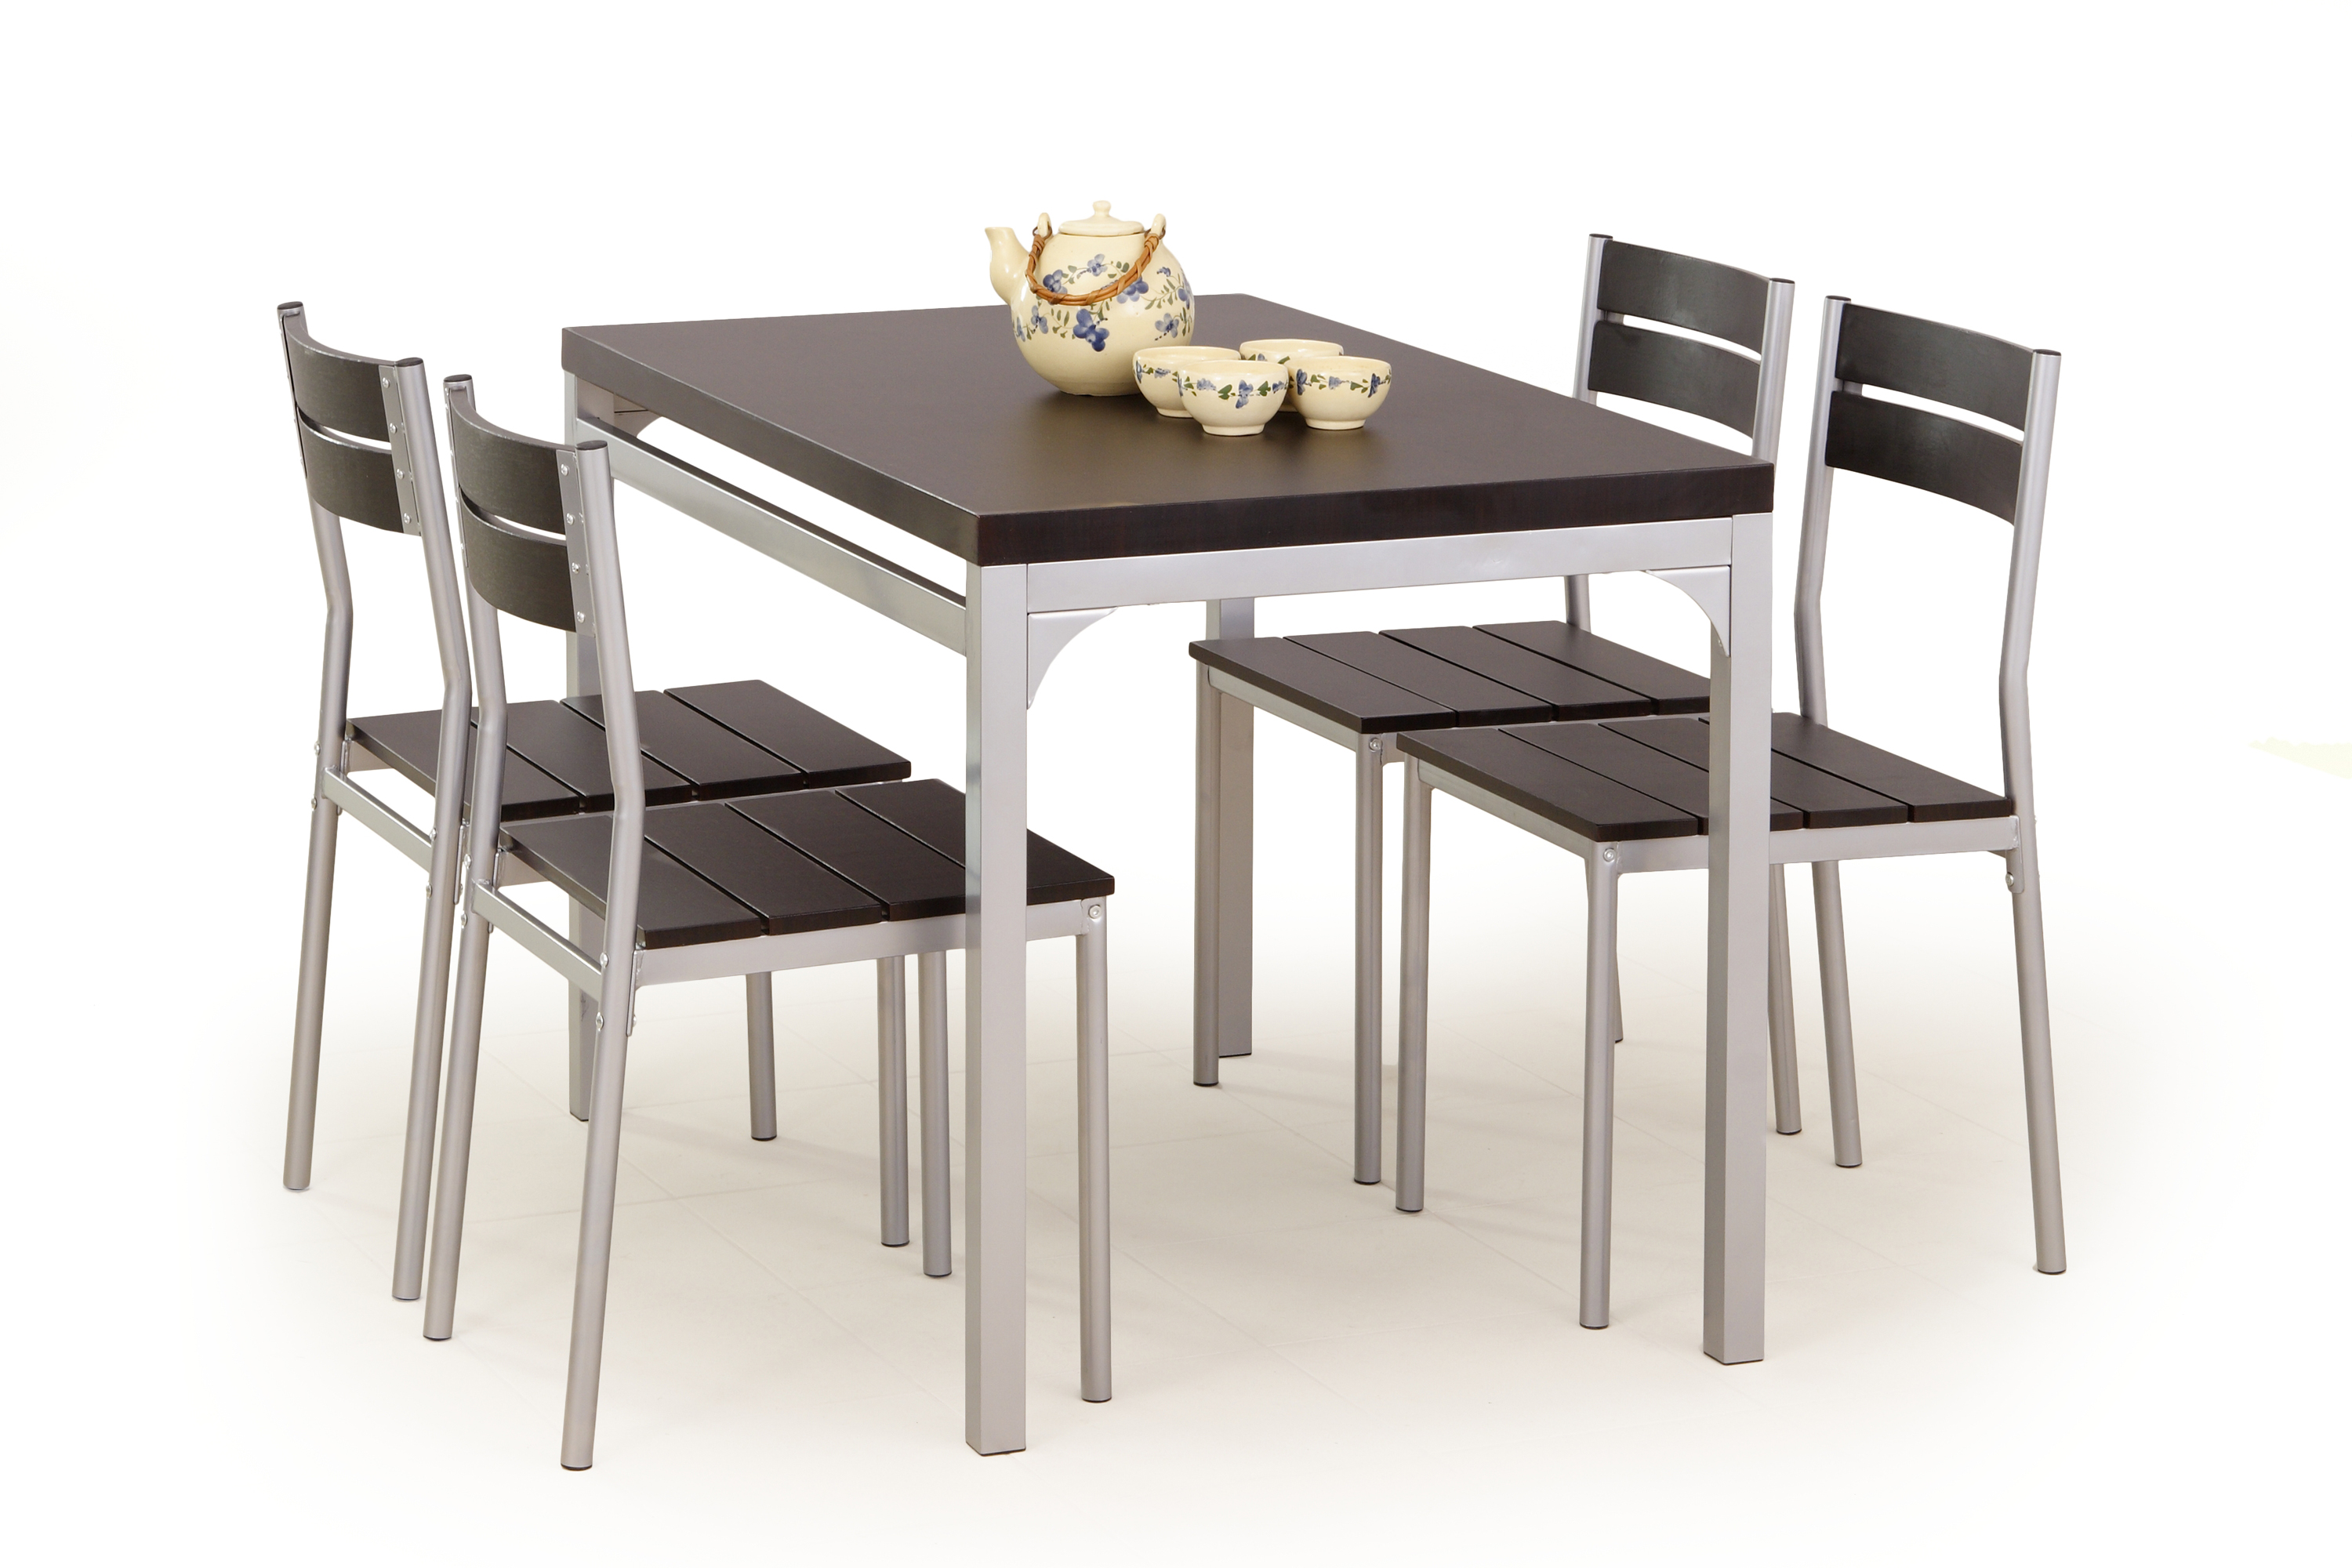 MALCOLM zestaw stół + 4 krzesła wenge malcolm zestaw stół + 4 krzesła wenge